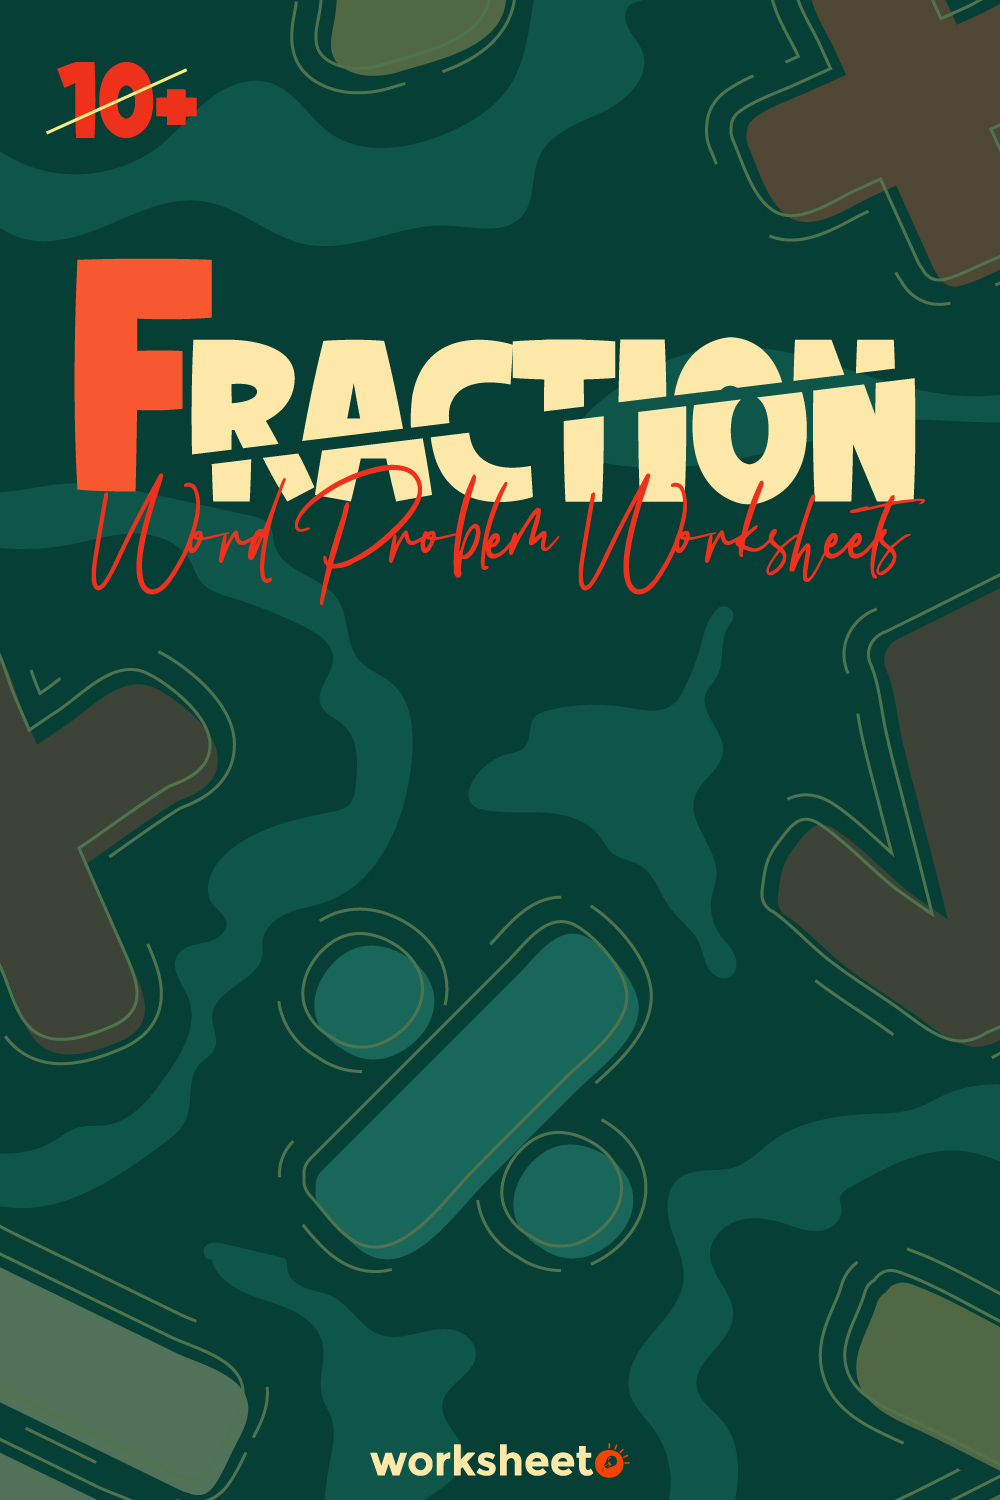 18 Images of Fraction Word Problem Worksheets